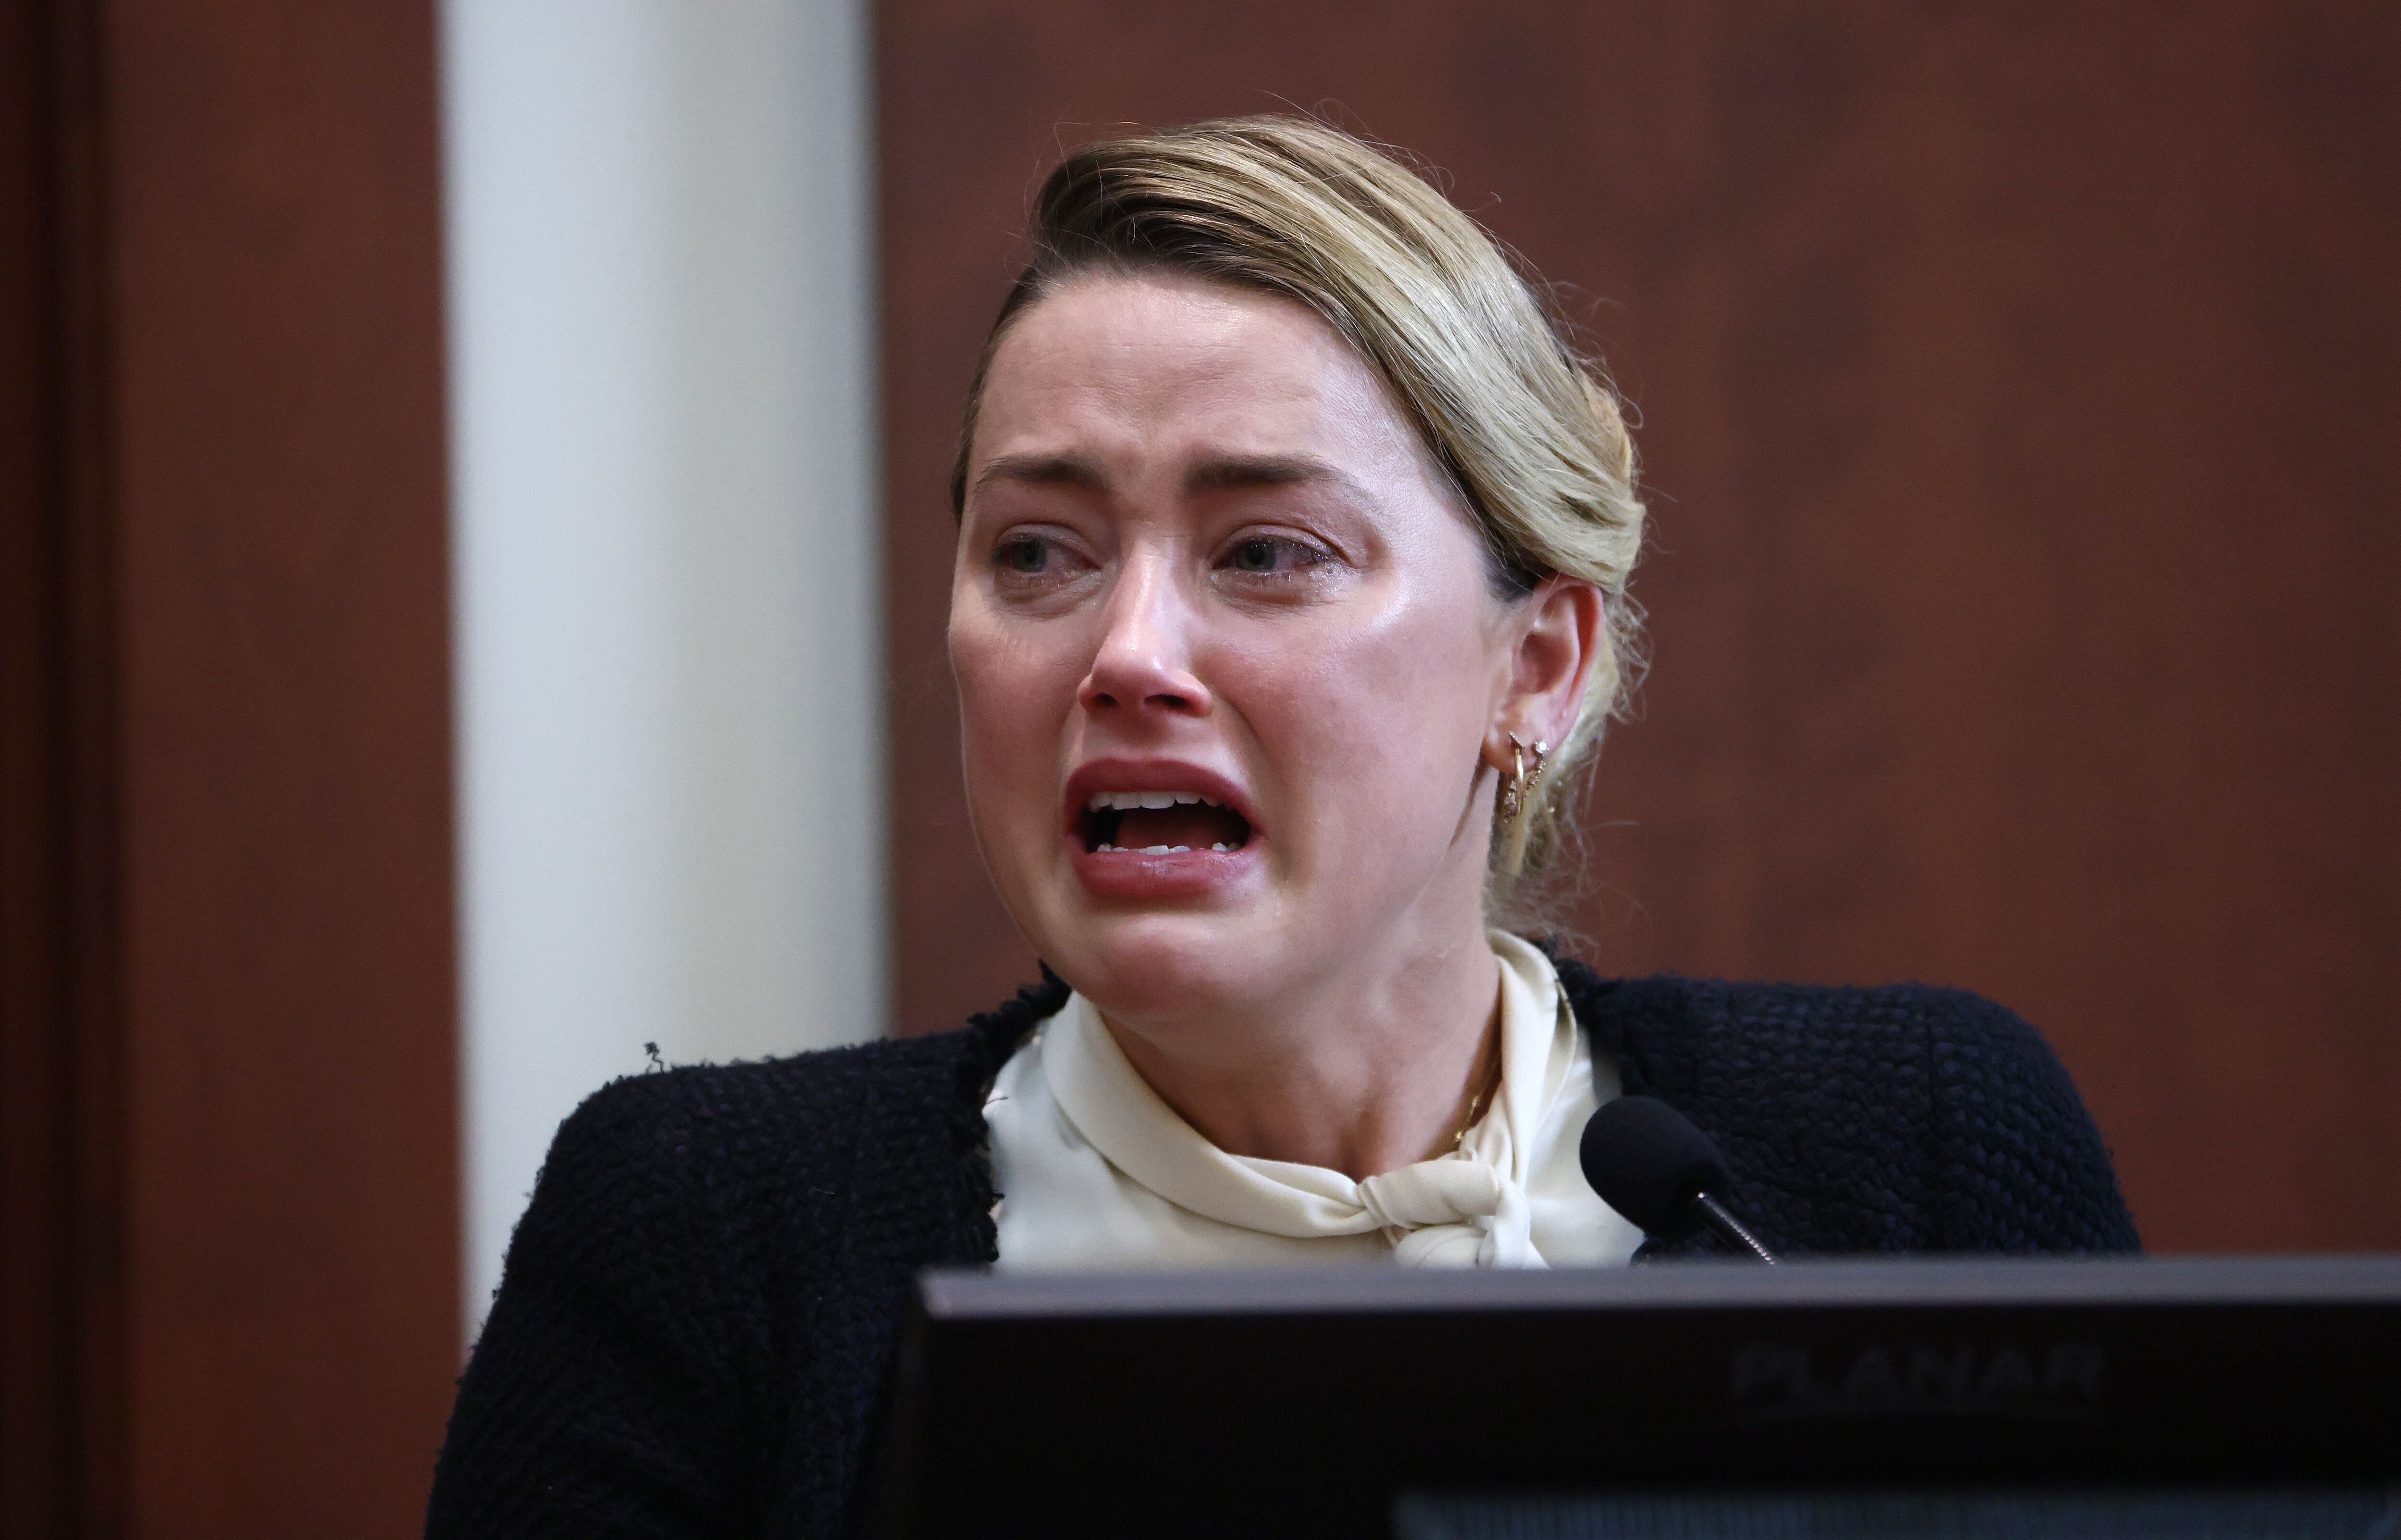 La actriz estadounidense Amber Heard reacciona en el estrado durante el juicio por difamación de 50 millones de dólares de Depp contra Heard en el Tribunal de Circuito del Condado de Fairfax, en Fairfax, Virginia, Estados Unidos, el 5 de mayo de 2022. (Estados Unidos) EFE/EPA/JIM LO SCALZO / POOL 